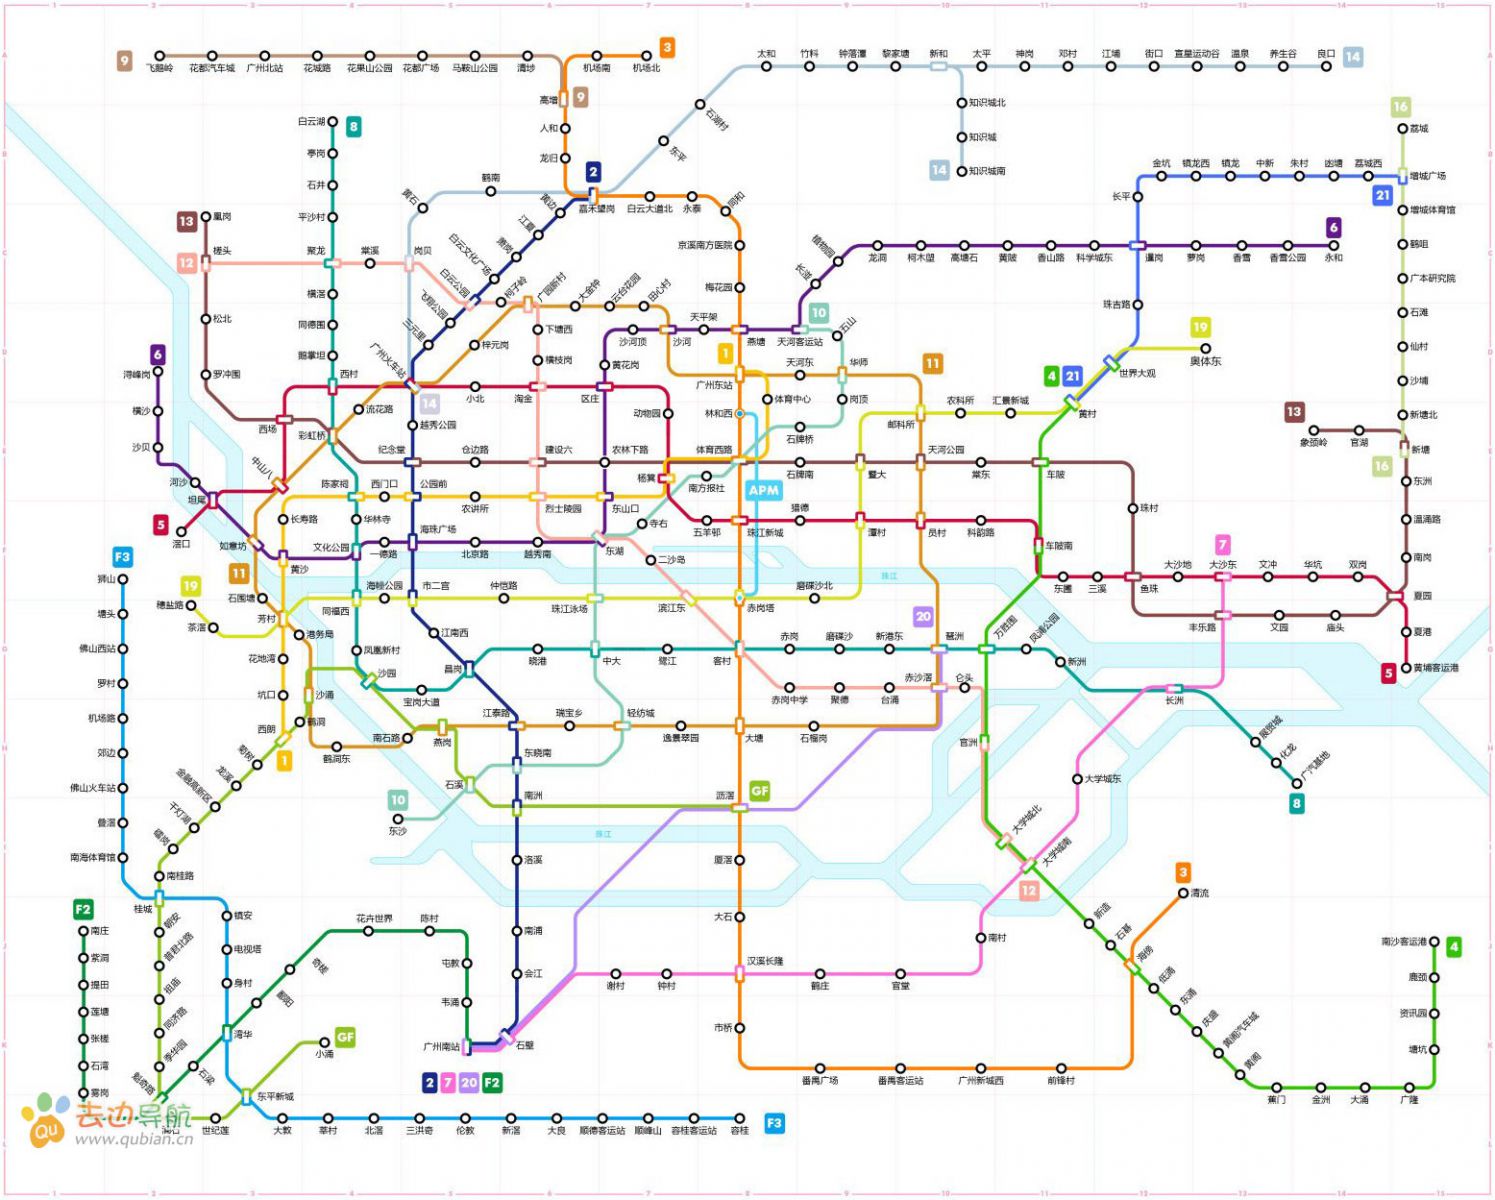 guangzhou_metro_2020.jpg